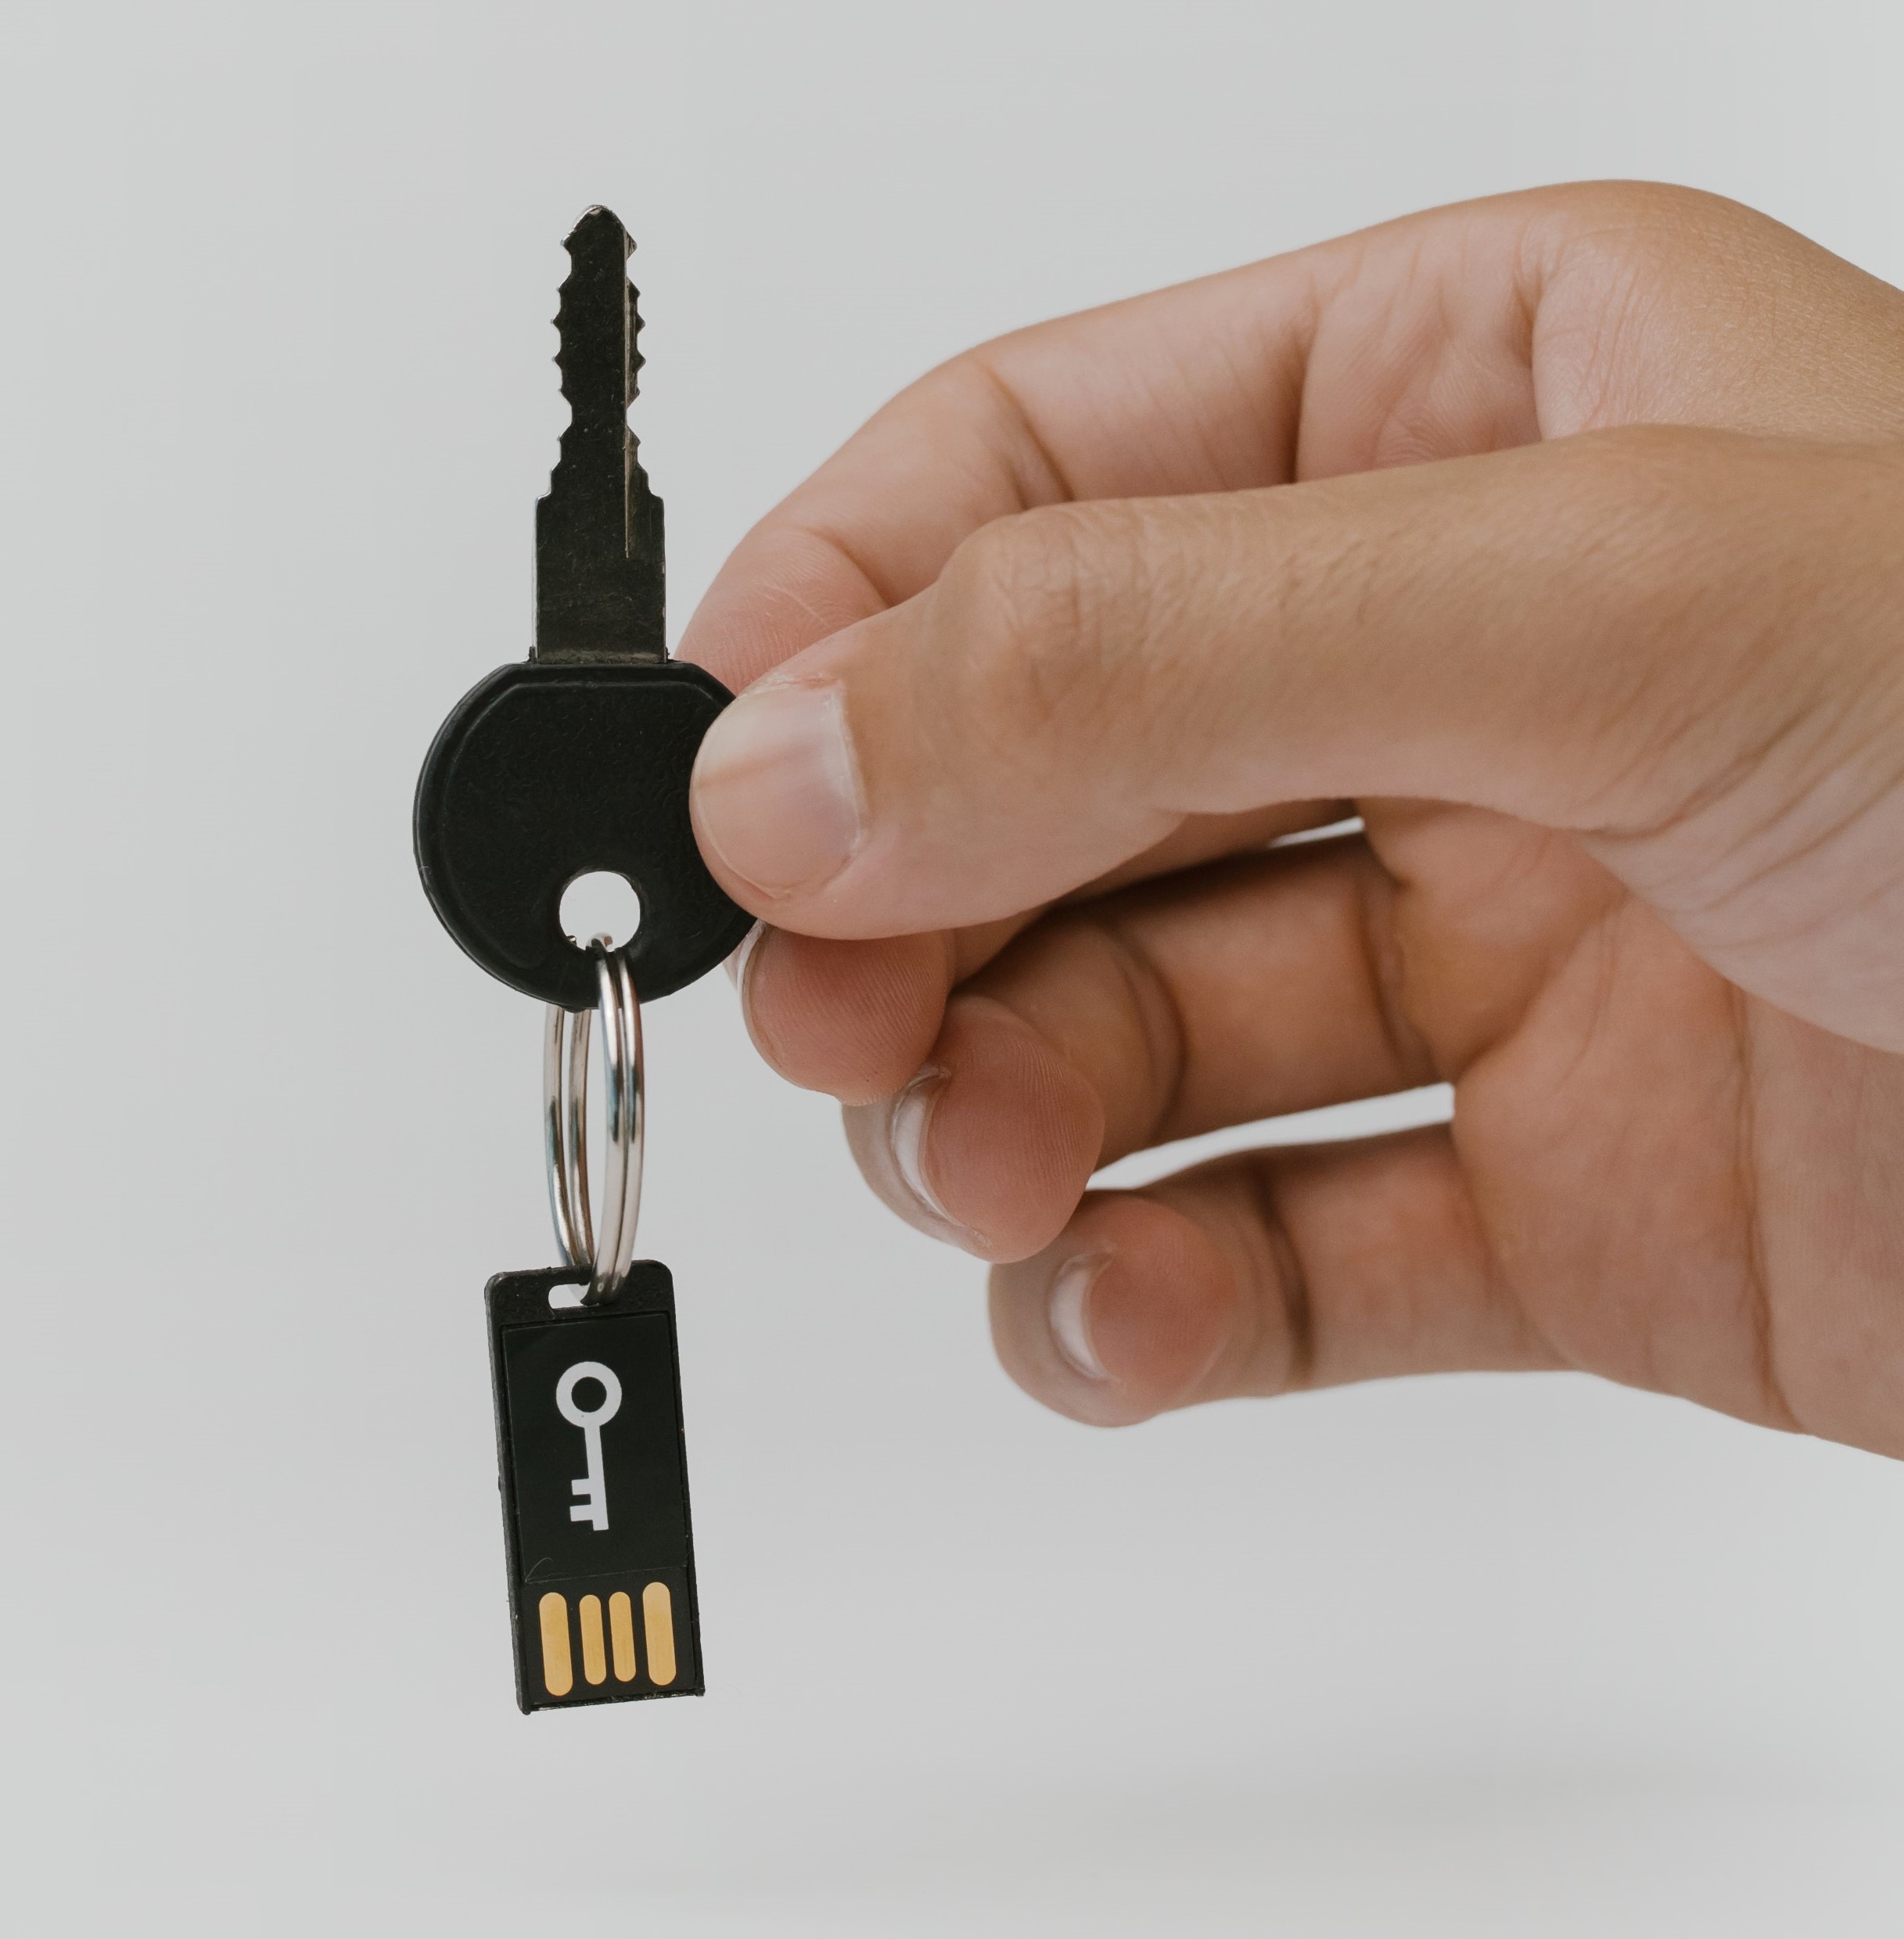 يد تمسك بمفتاح حقيقي بحلقة مفاتيح متصلة بجهاز مصادقة ثنائي العوامل